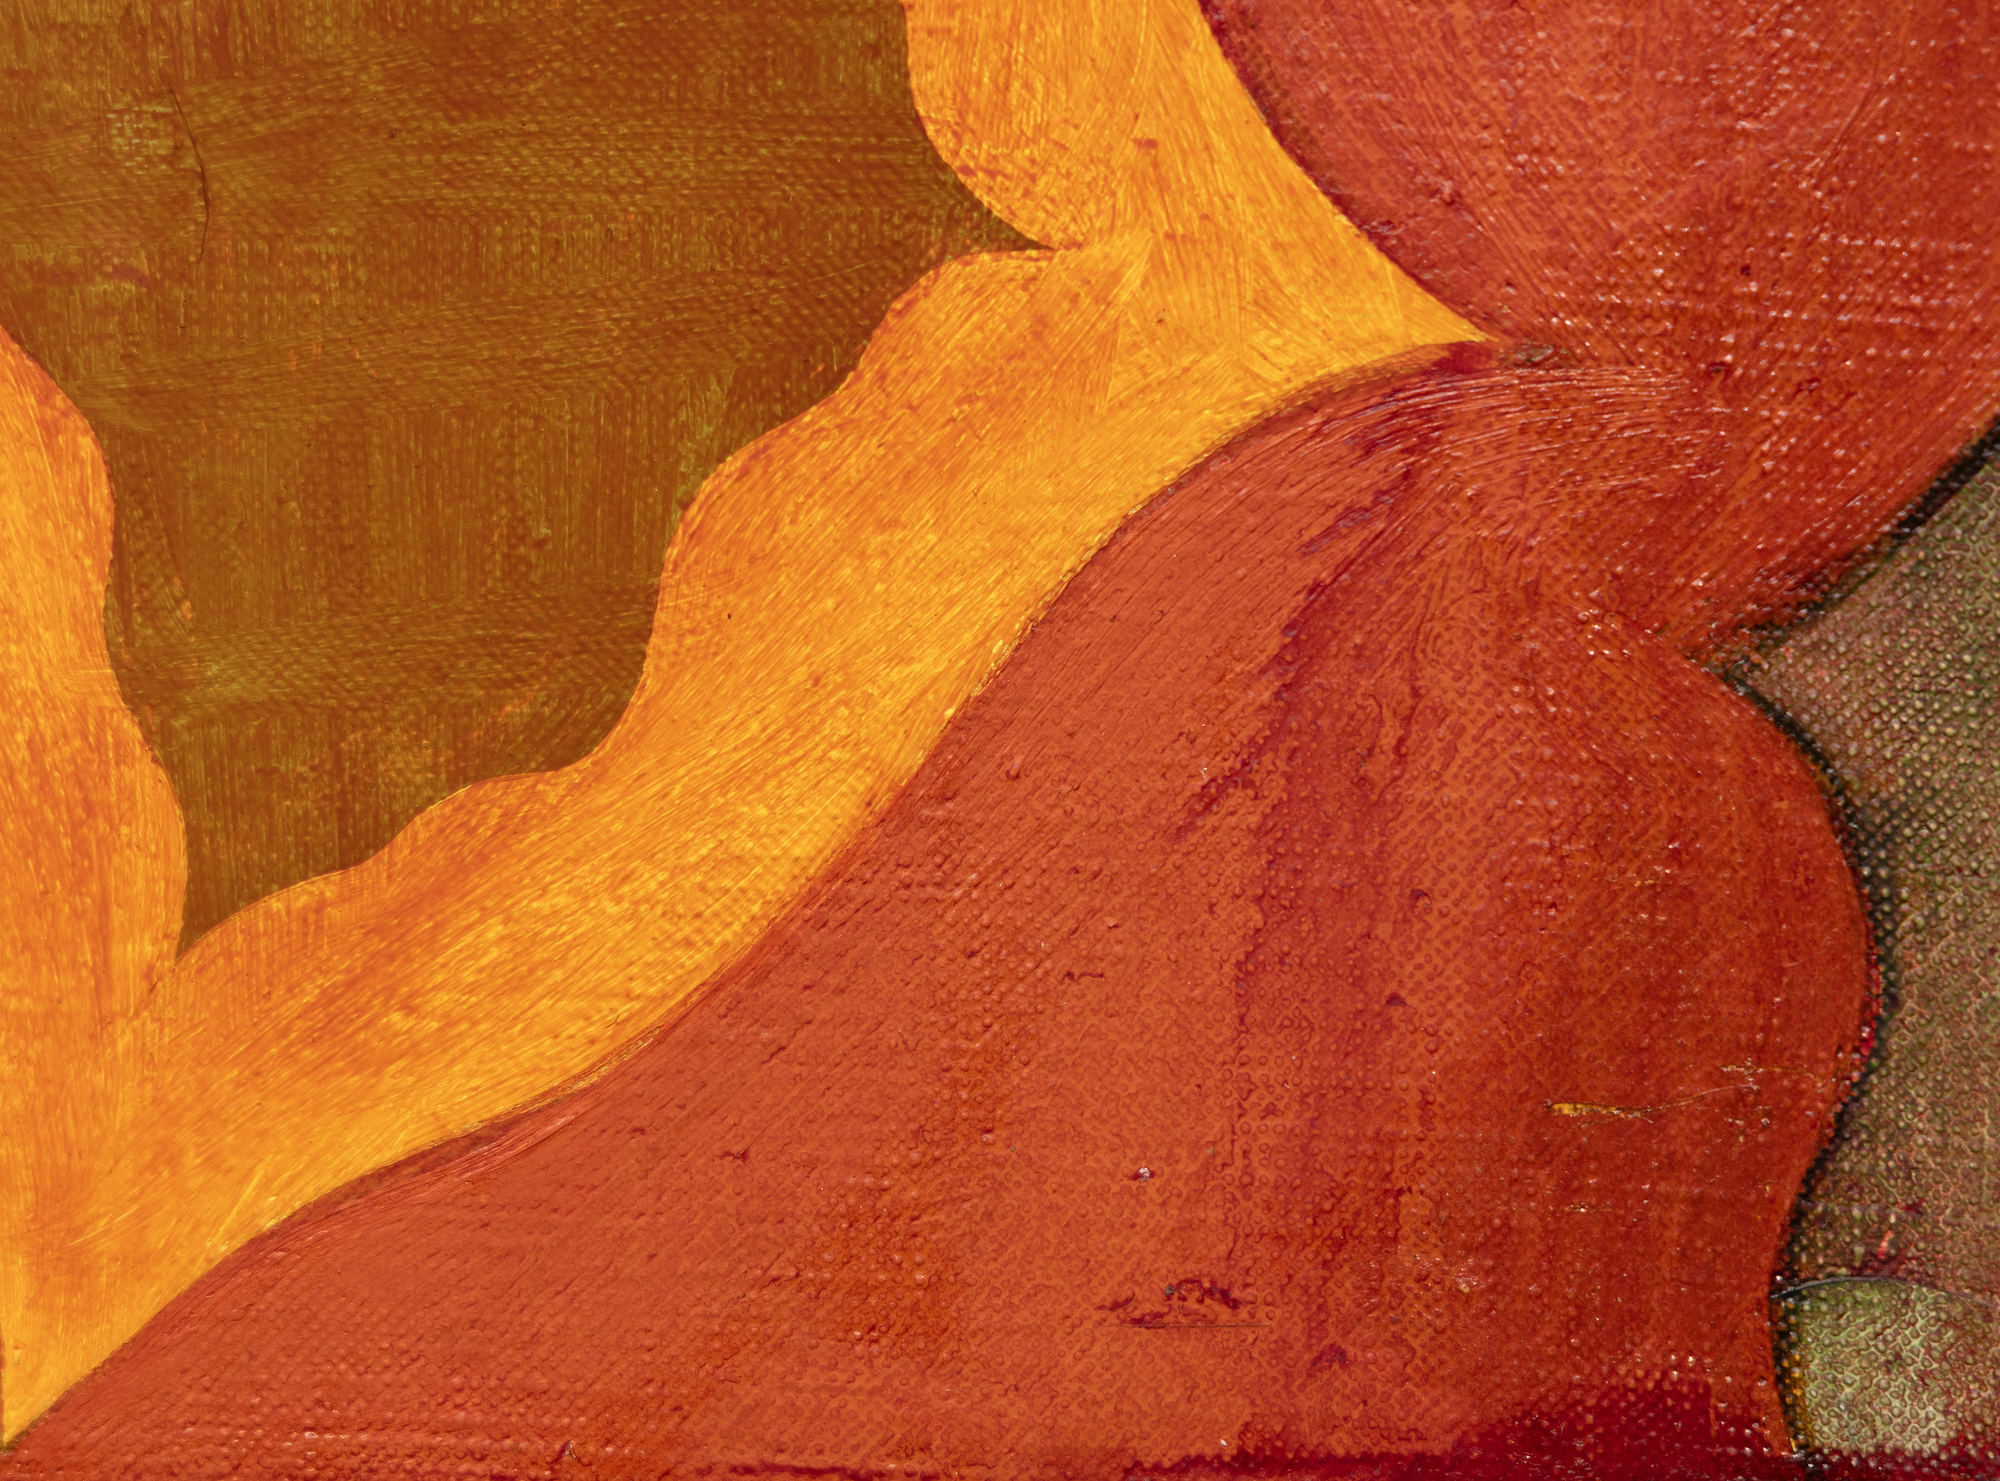 Nacido en 1944, Thomas Nozkowski creó pequeñas pinturas de gran riqueza cromática que reflejan las influencias dicotómicas de los expresionistas abstractos y los refugiados de la Bauhaus con los que estudió en la Cooper Union. Utilizando un pincel pequeño, su manejo incluye el raspado y el frotamiento de la pintura en formas que se registran en la obra terminada. Desarrolló un vocabulario distintivo y de gran alcance, empleando formas geométricas de tipo biomórfico en variadas combinaciones de colores y una amplia gama de asociaciones: suelos de baldosas, grupos de células, arquitectura y espacio exterior. A menudo, se destilan de sus propios recuerdos y experiencias. Nozkowski comentó este cuadro en concreto (Sin título, 1994) diciendo que refleja su fascinación por las escenas mitológicas pintadas en los paneles de las arcas de cassones del Renacimiento. Dijo que era el mejor de los tres o cuatro paneles de 15" x 30" de esta serie. Nozkowski fue manejado durante muchos años por la Galería Pace. Murió en 2019.